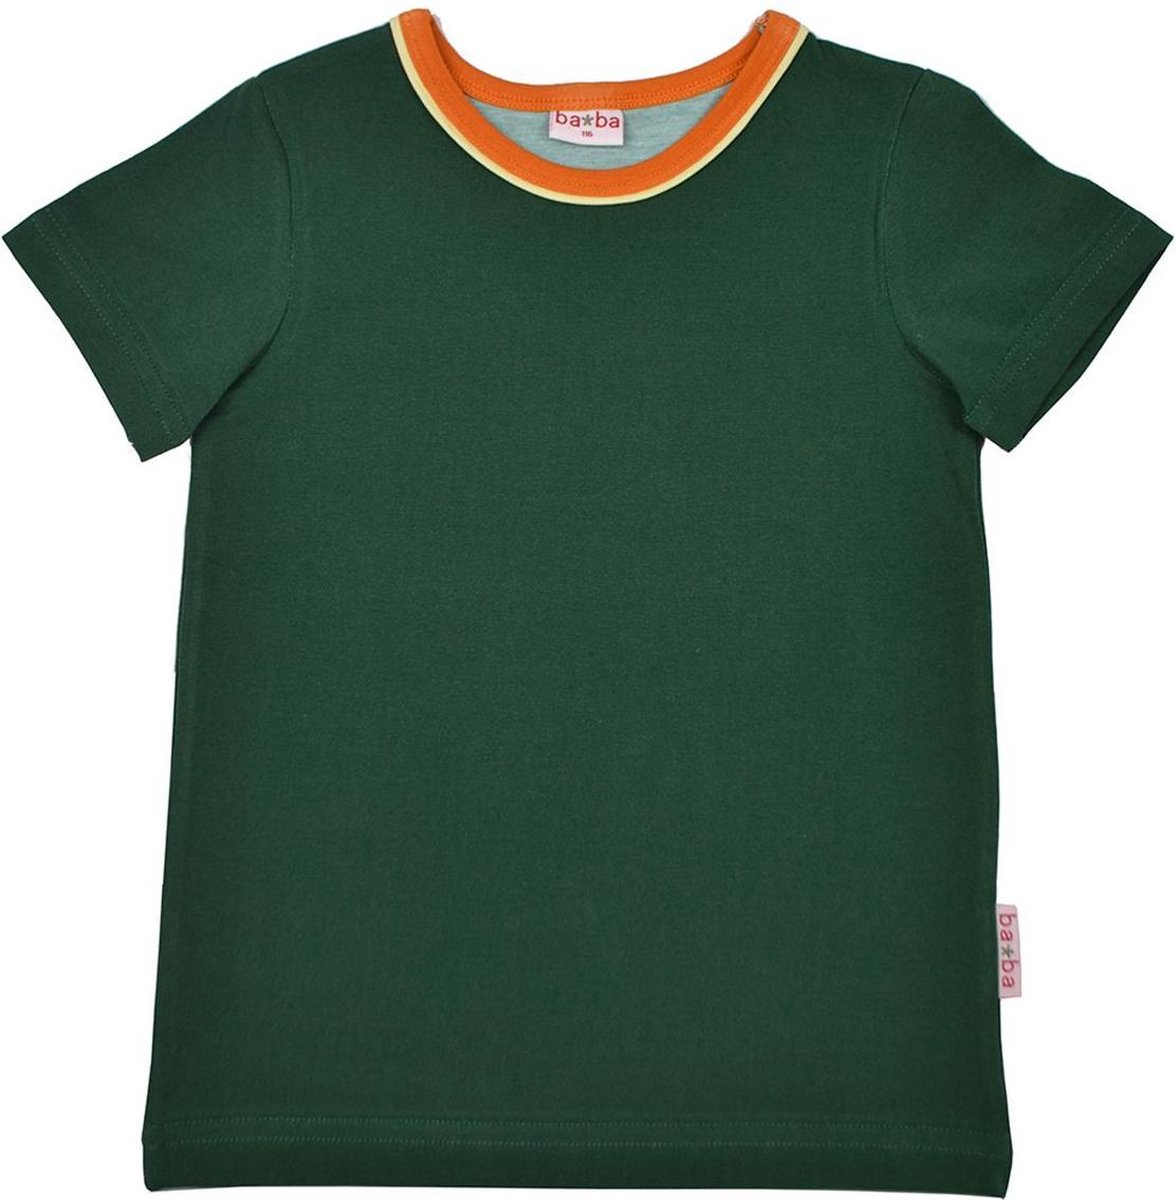 BA*BA Kidswear T-shirt Green Maat 116